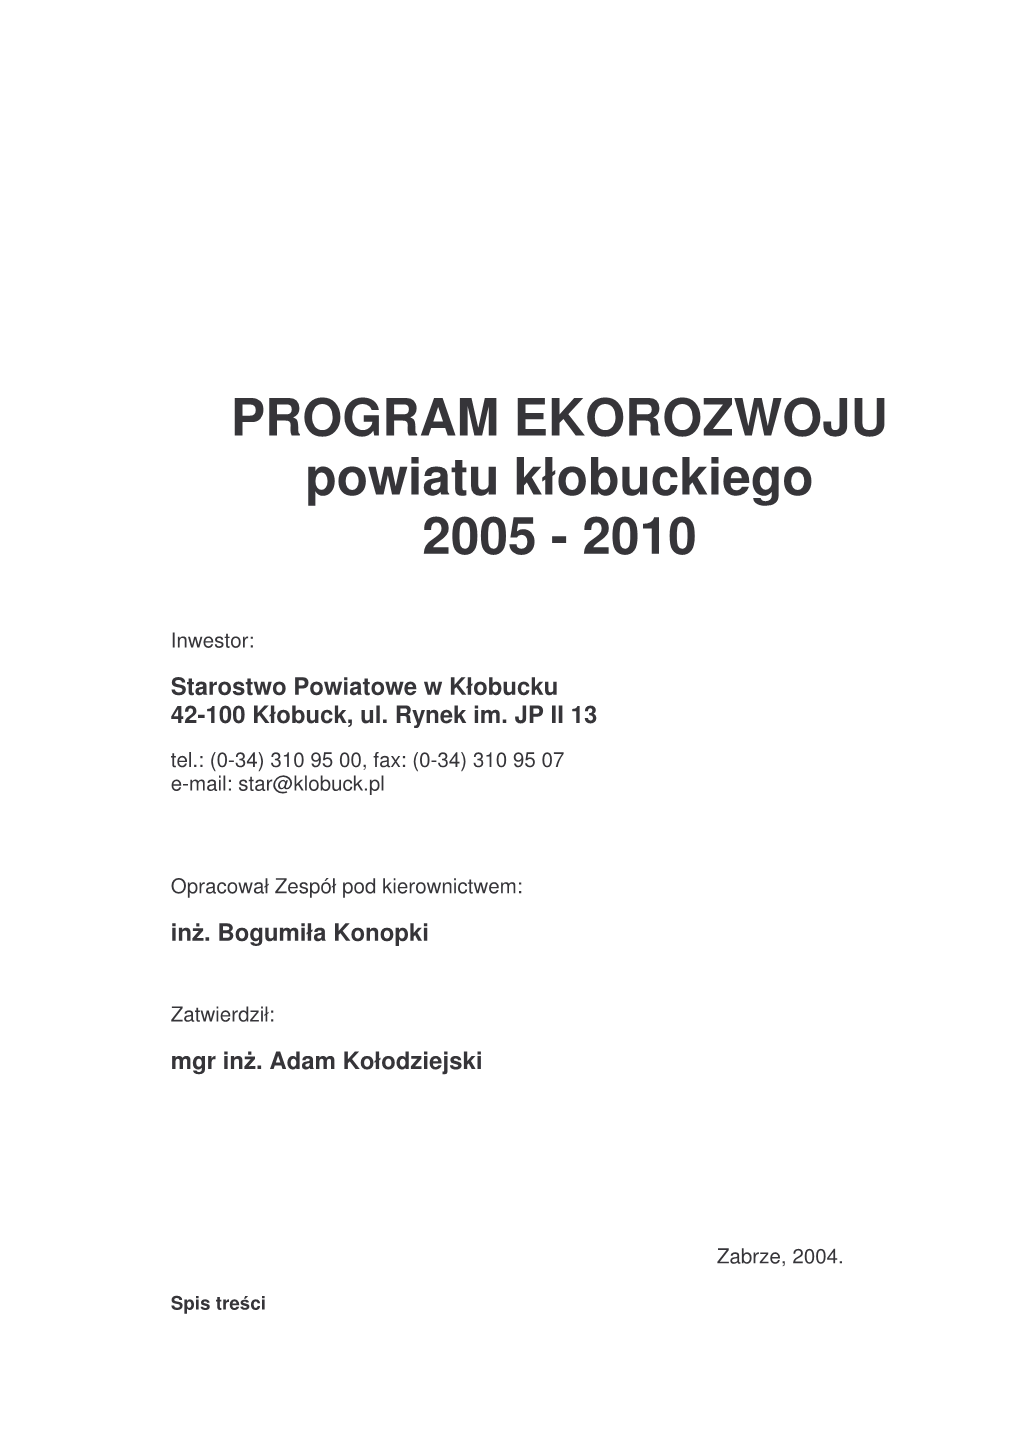 PROGRAM EKOROZWOJU Powiatu Kłobuckiego 2005 - 2010